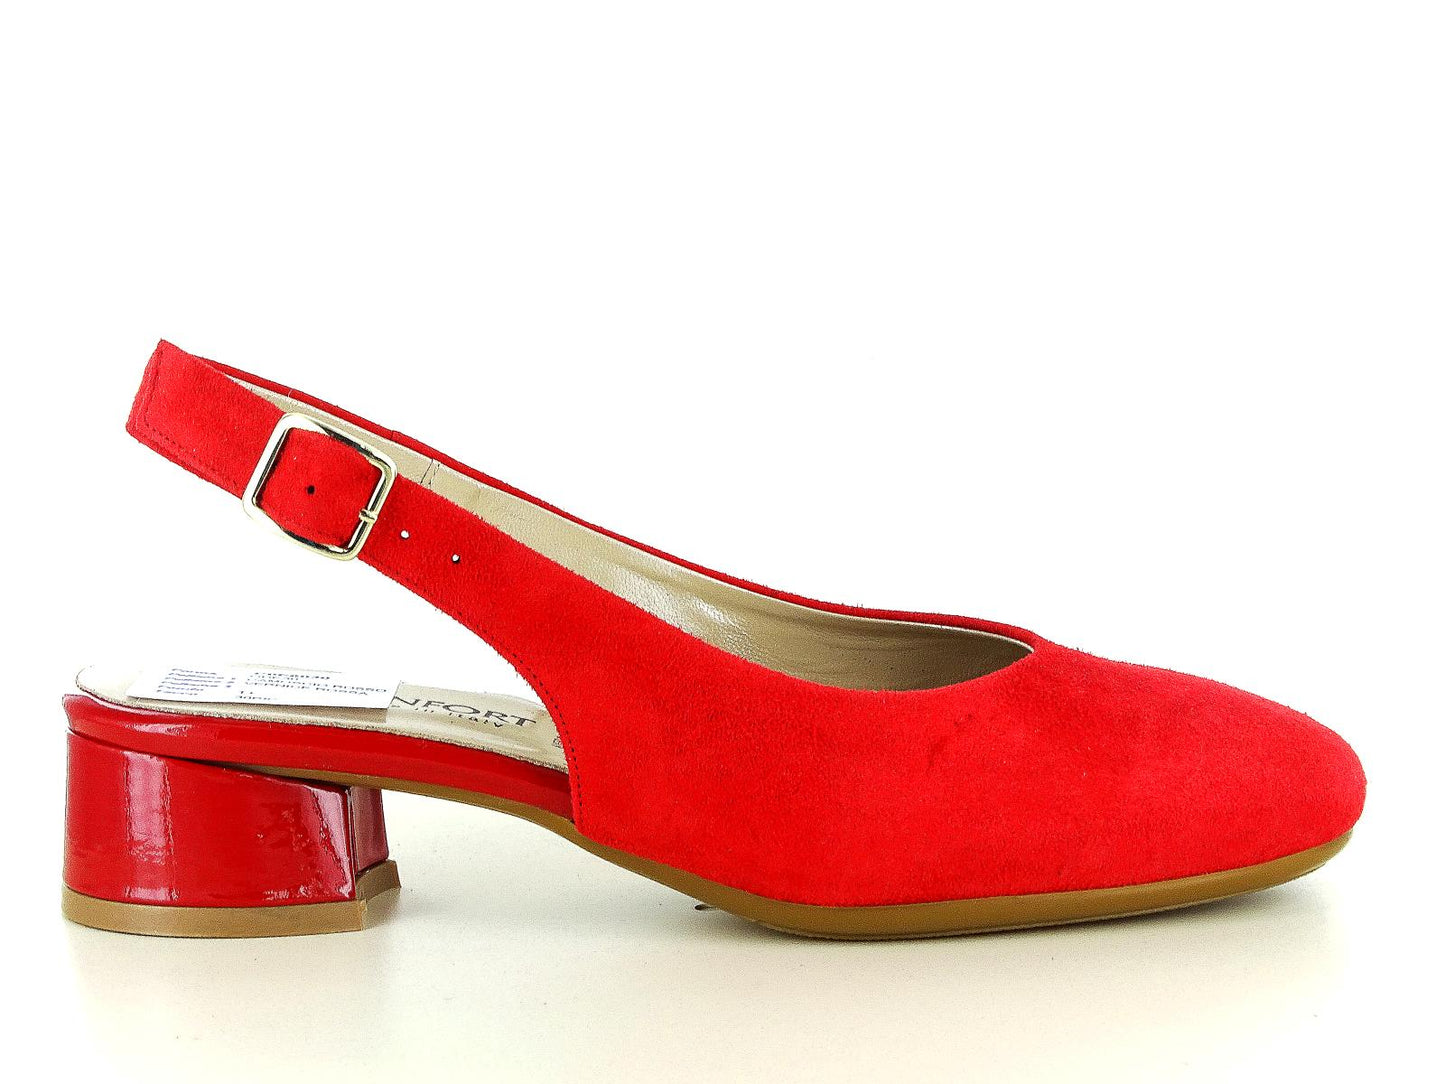 CONFORT 6030 Scarpe tipo chanel da donna in ecopelle con effetto scamosciato nel colore rosso con tacco primaverili